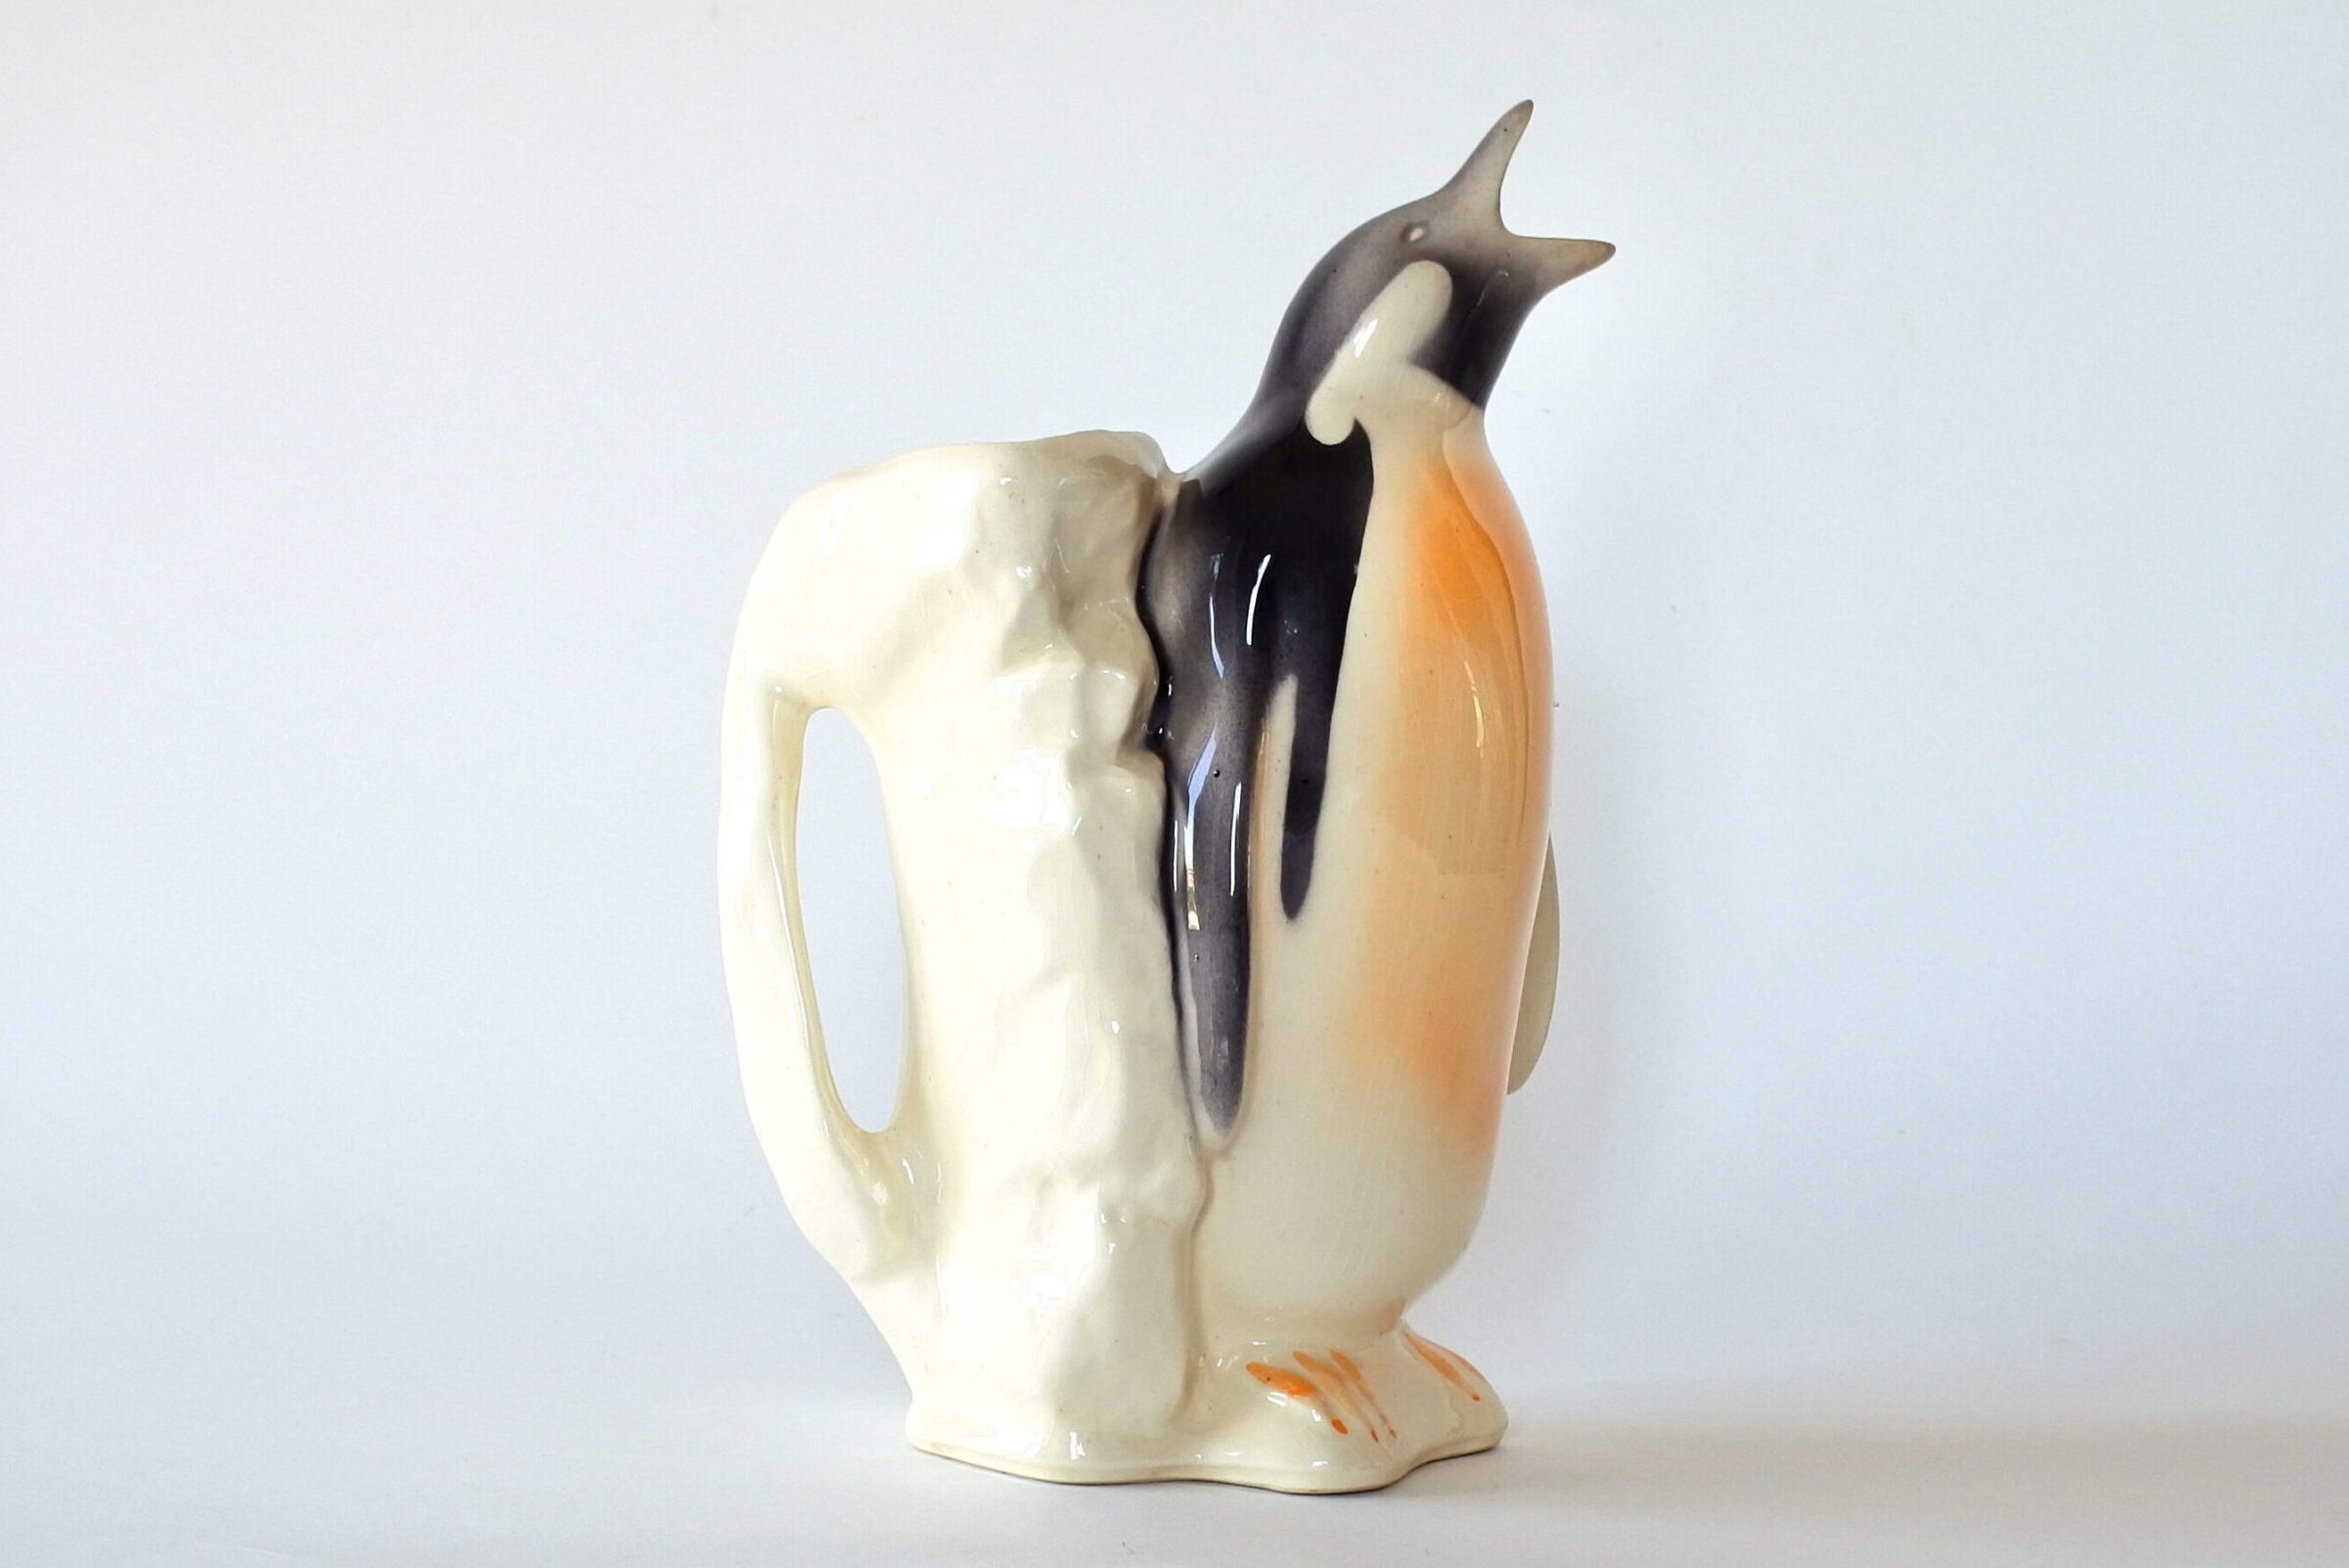 Brocca in ceramica barbotine a forma di pinguino con iceberg - 4